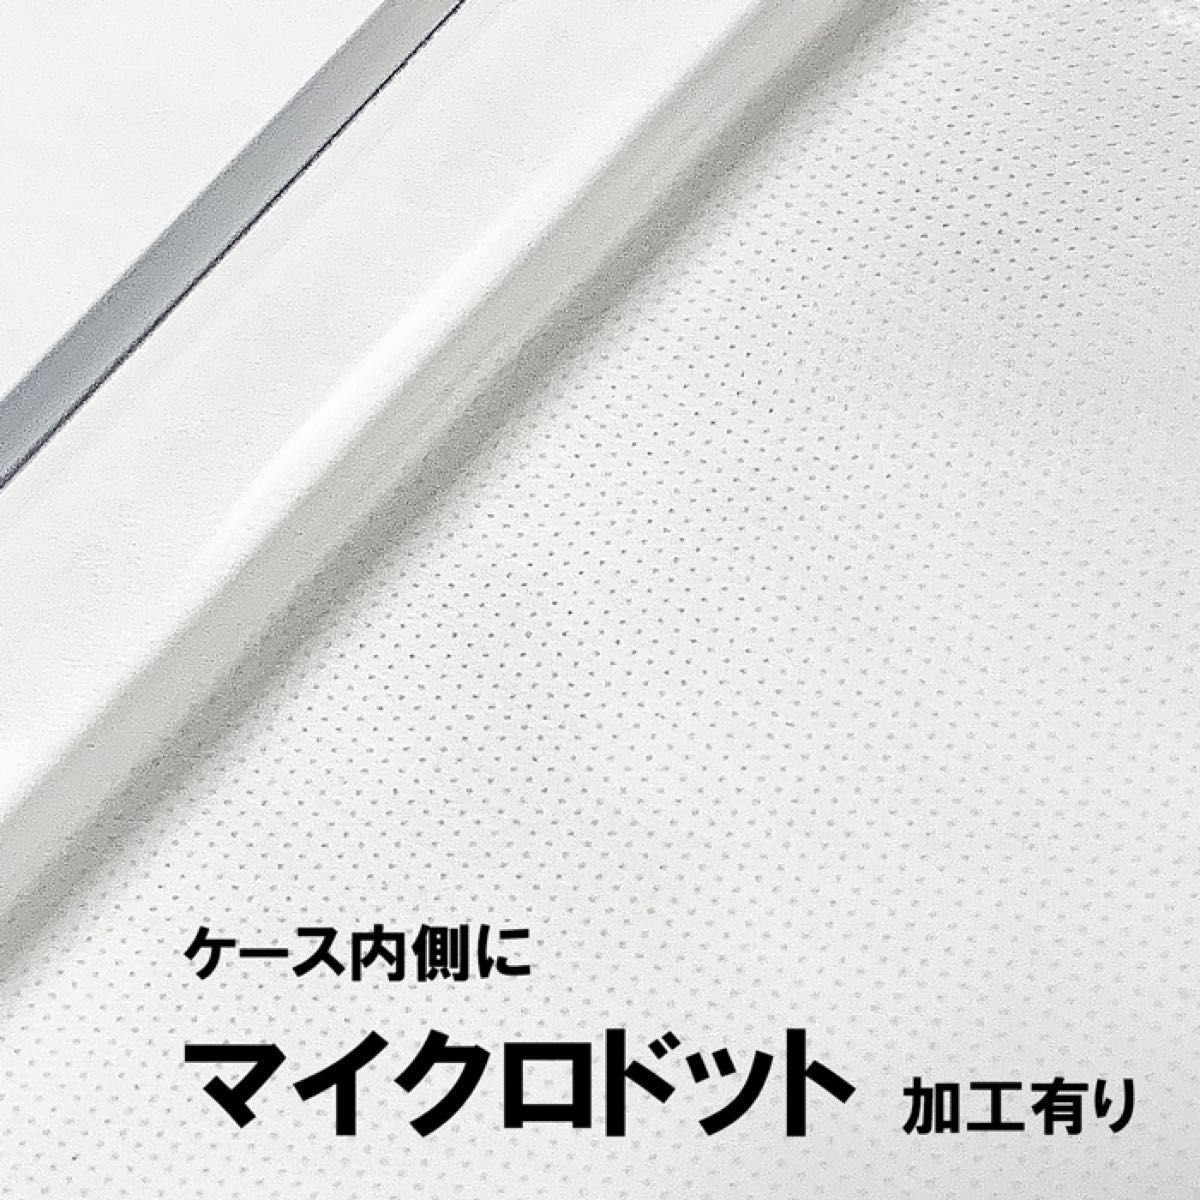 Rakuten Hand クリアソフトケース TPU 透明 新品未使用 楽天ハンド 楽天モバイル RakuteHand ラクテン